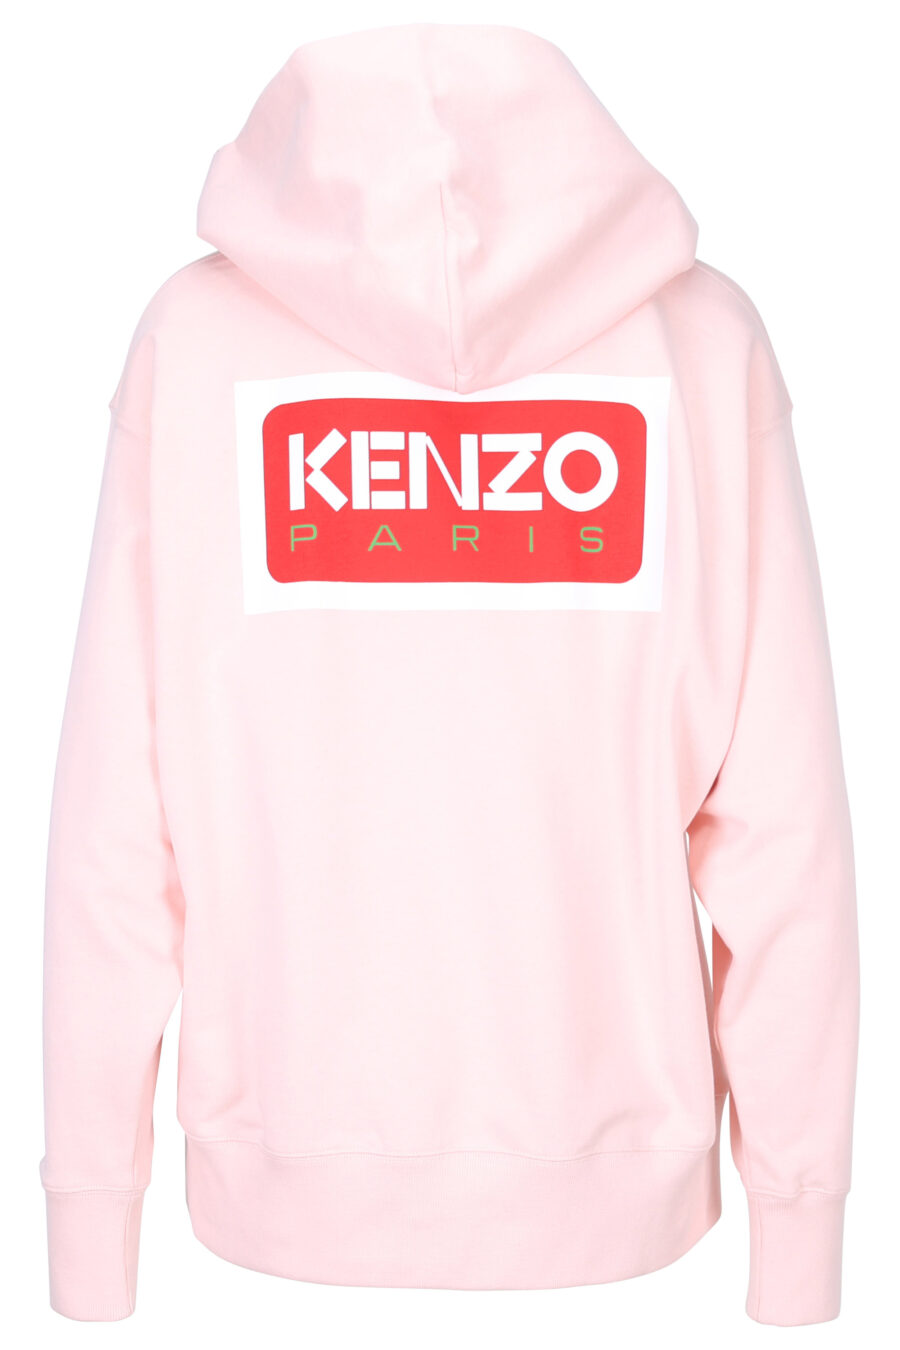 Sudadera "oversize" rosa con capucha y logo "kenzo paris" - 3612230515734 2